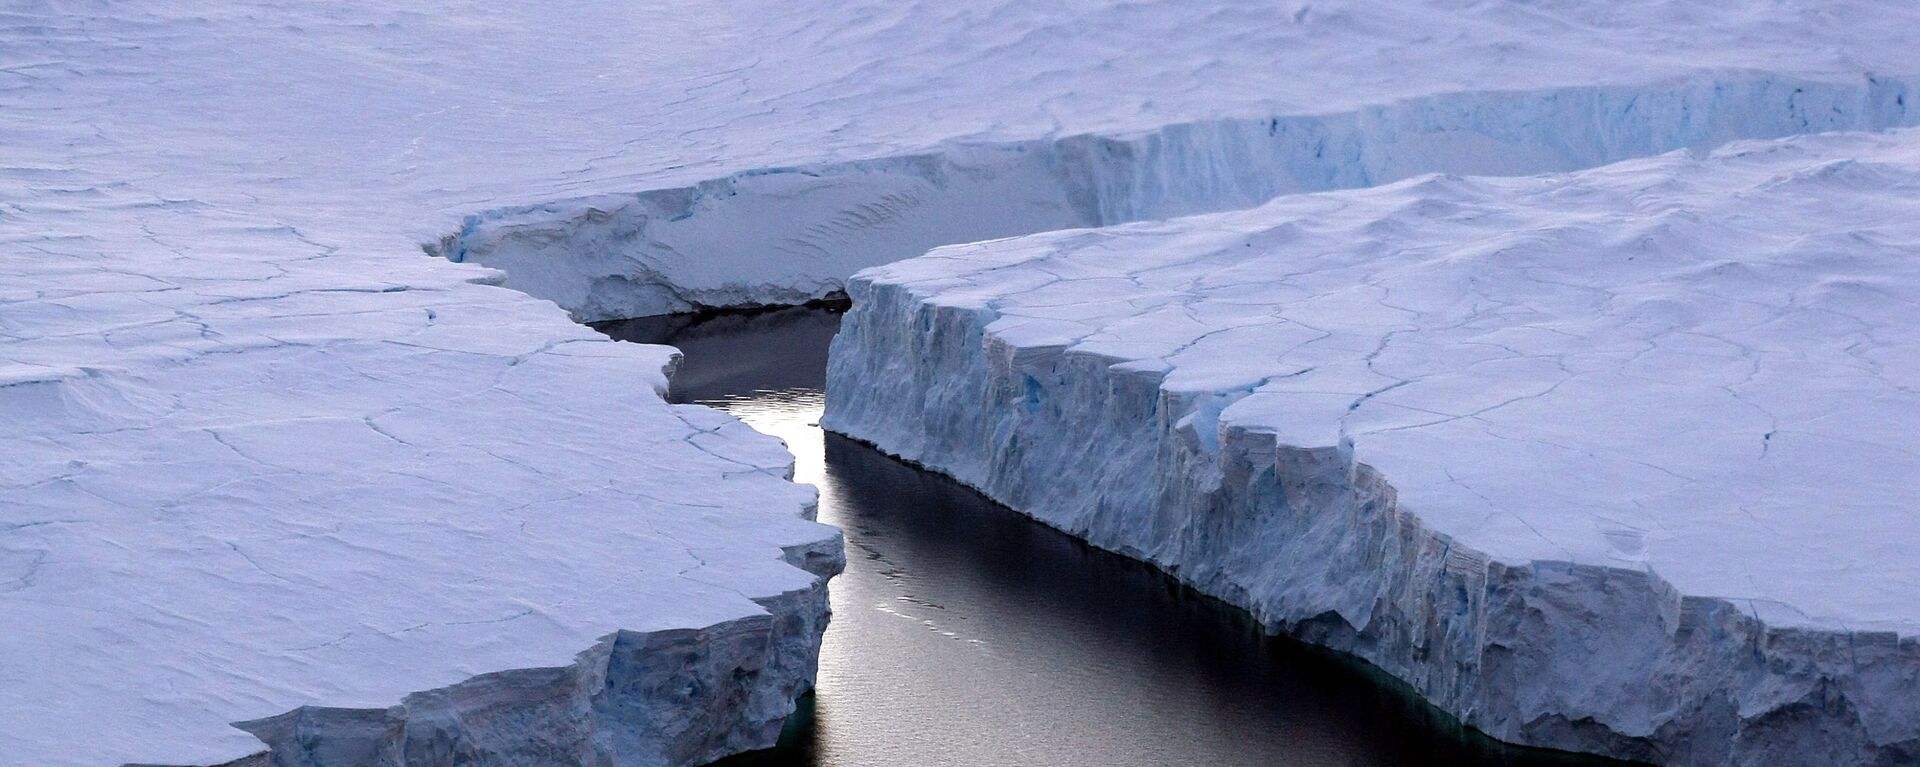 صورة لجبل جليدي ضخم آيسبيرغ آر (iceberg (R)) ينشق من ساحل نوكس (Knox Coast) في المنطقة الأسترالية من القطب الجنوبي، 11 يناير/ كانون الثاني 2008. وقالت لجنة الأمم المتحدة في 23 سبتمبر/ أيلول 2013 أنها متأكدة أكثر من ذي قبل من أن البشر وراء سبب الاحتباس الحراري للكرة الأرضية، وتوقعت ارتفاع درجات الحرارة بنسبة 0.3 إلى 4.8 درجة مئوية خلال هذا القرن. - سبوتنيك عربي, 1920, 25.07.2021